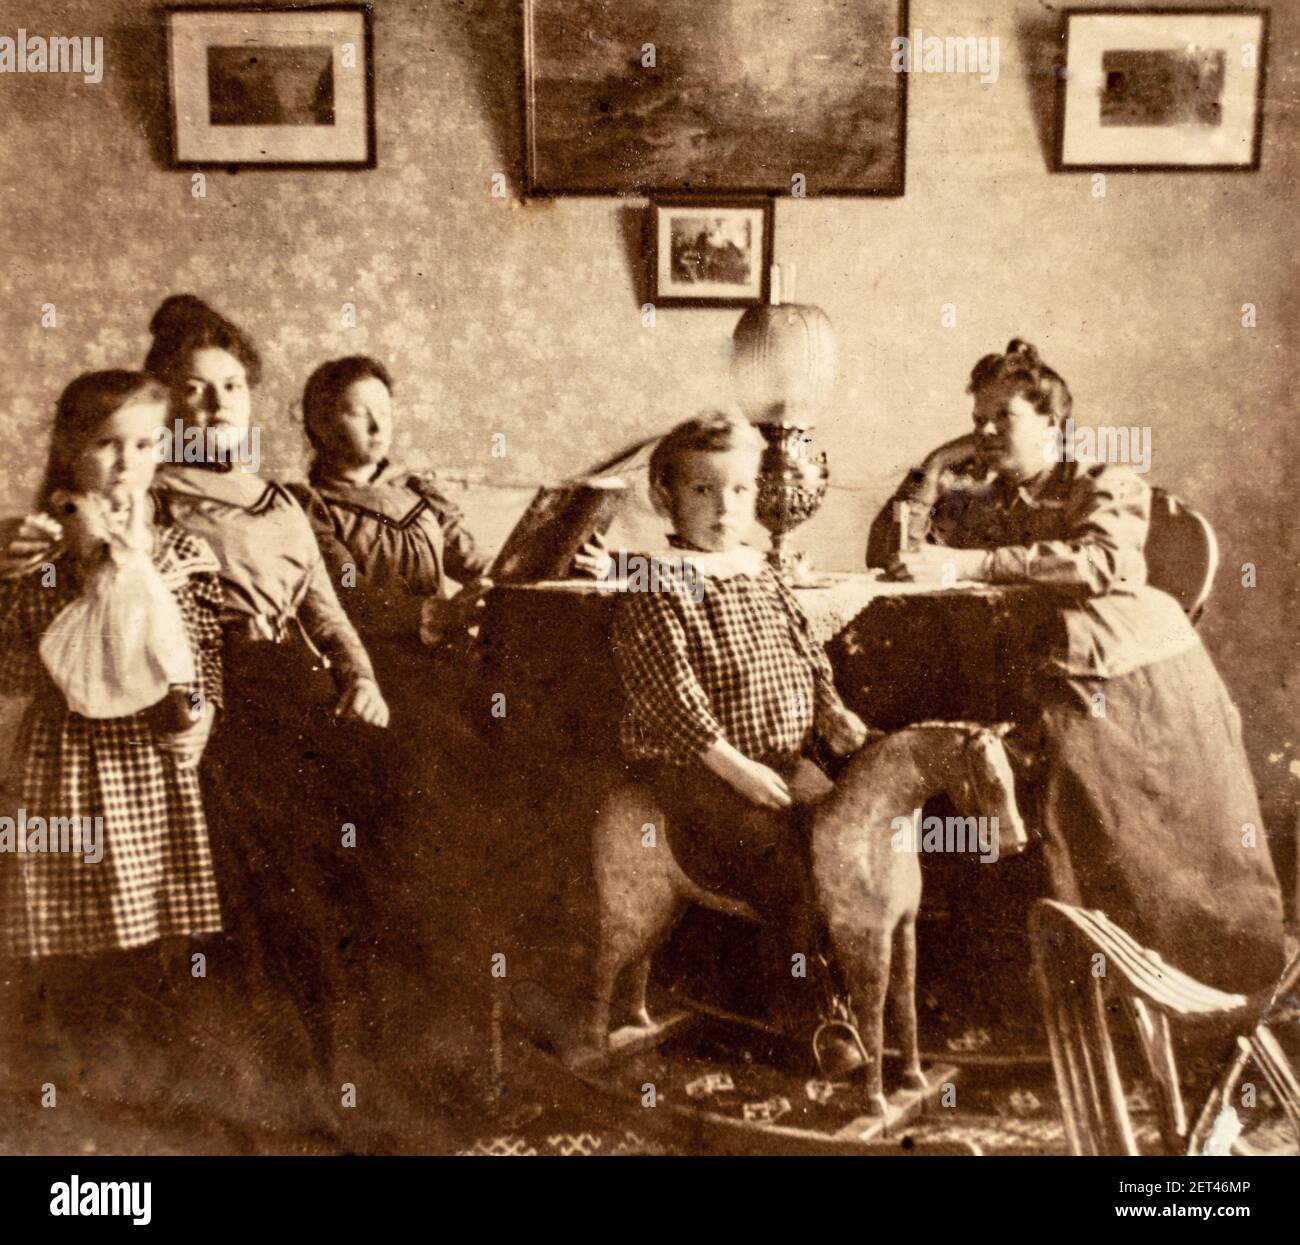 Russie - VERS 1900 : portrait de groupe de femmes d'arbre et de deux enfants dans la salle à manger. Garçon jouant sur un cheval à bascule en bois. Carte de Viste vintage Banque D'Images